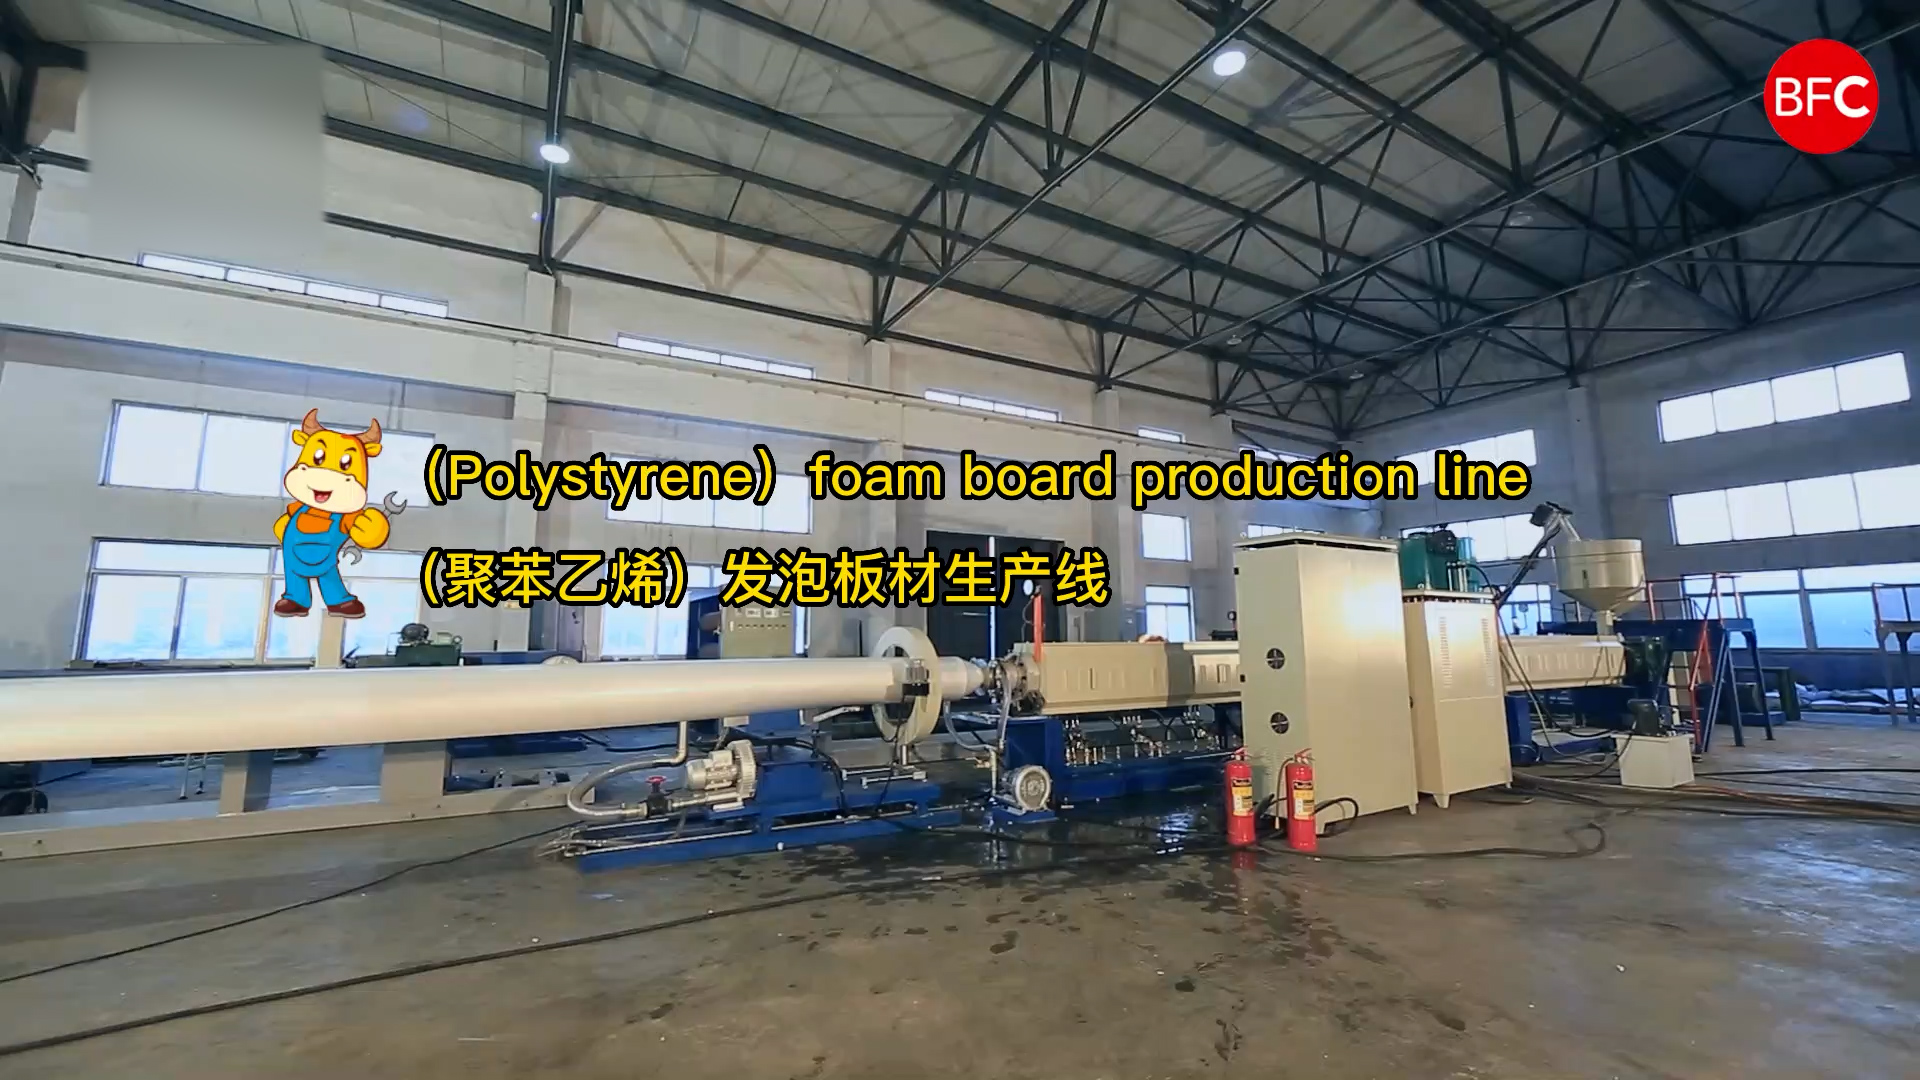 (Polystyrene) foam board production line